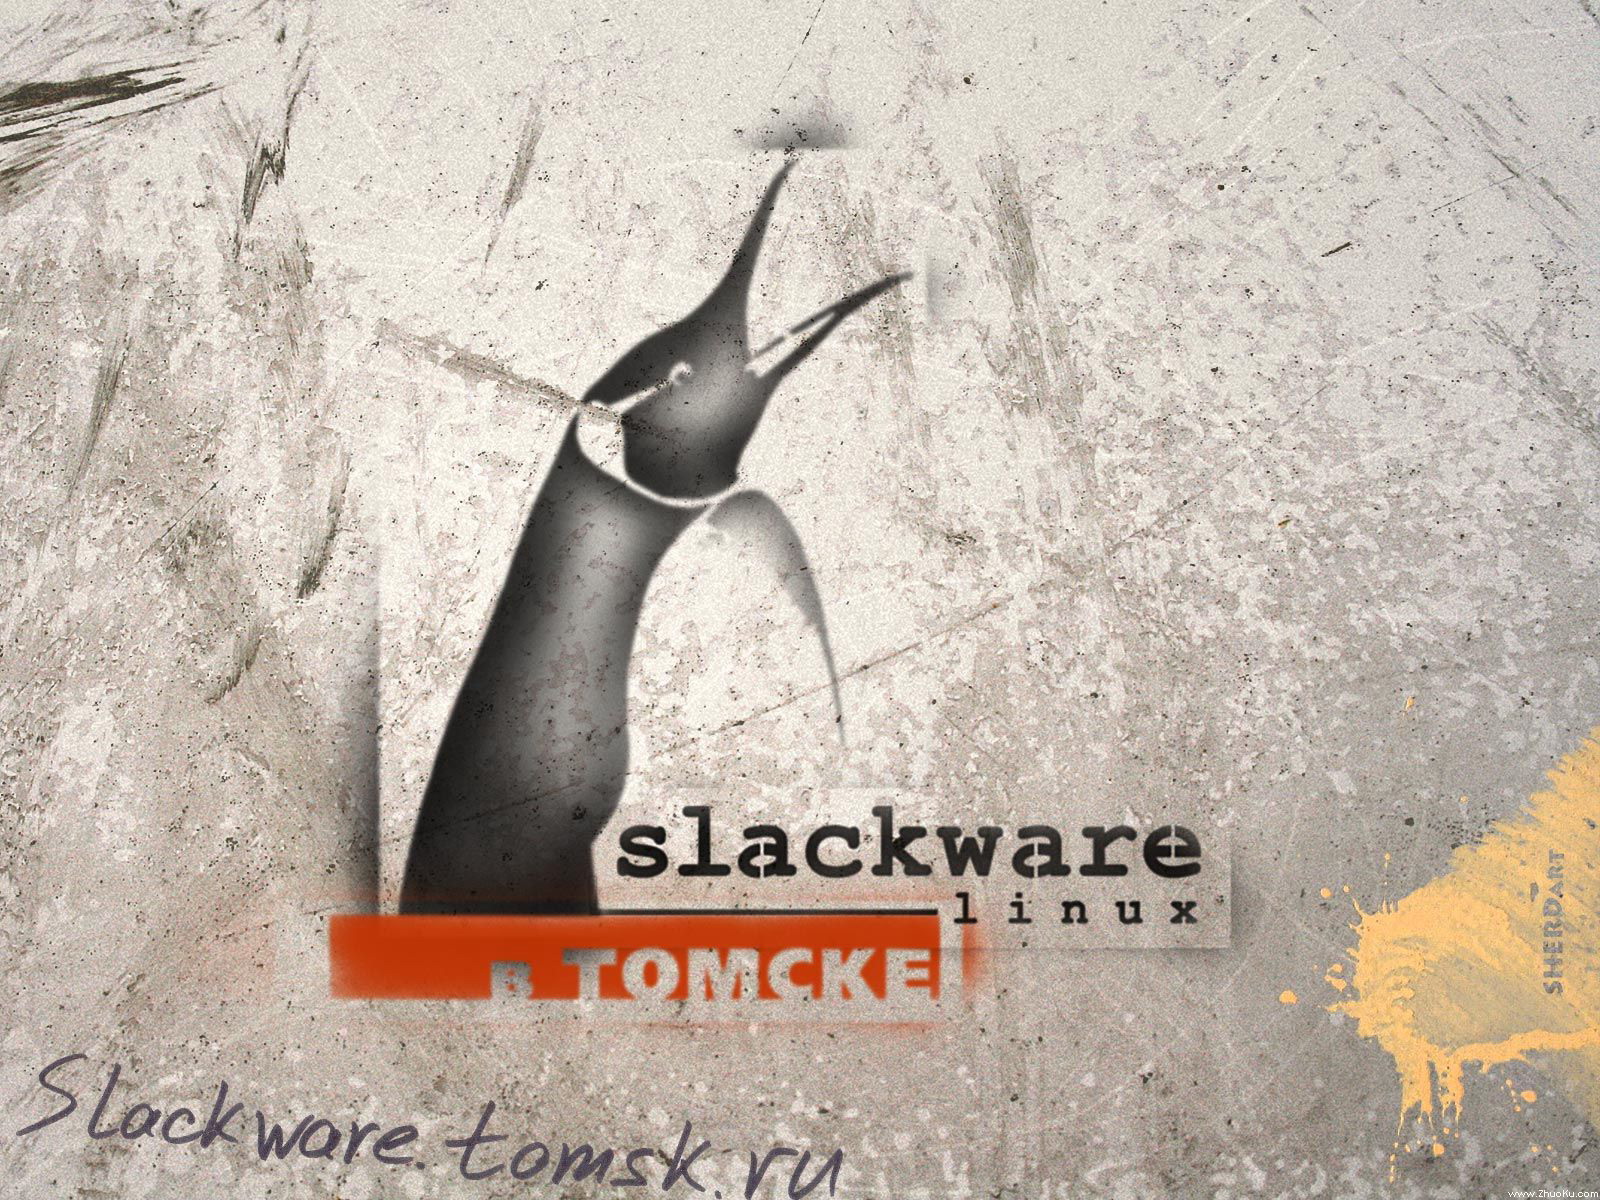 壁纸1600x1200Slackware Linux 1024 768 1280 1024 1600 1200 壁纸76壁纸 Slackware壁纸 Slackware图片 Slackware素材 系统壁纸 系统图库 系统图片素材桌面壁纸